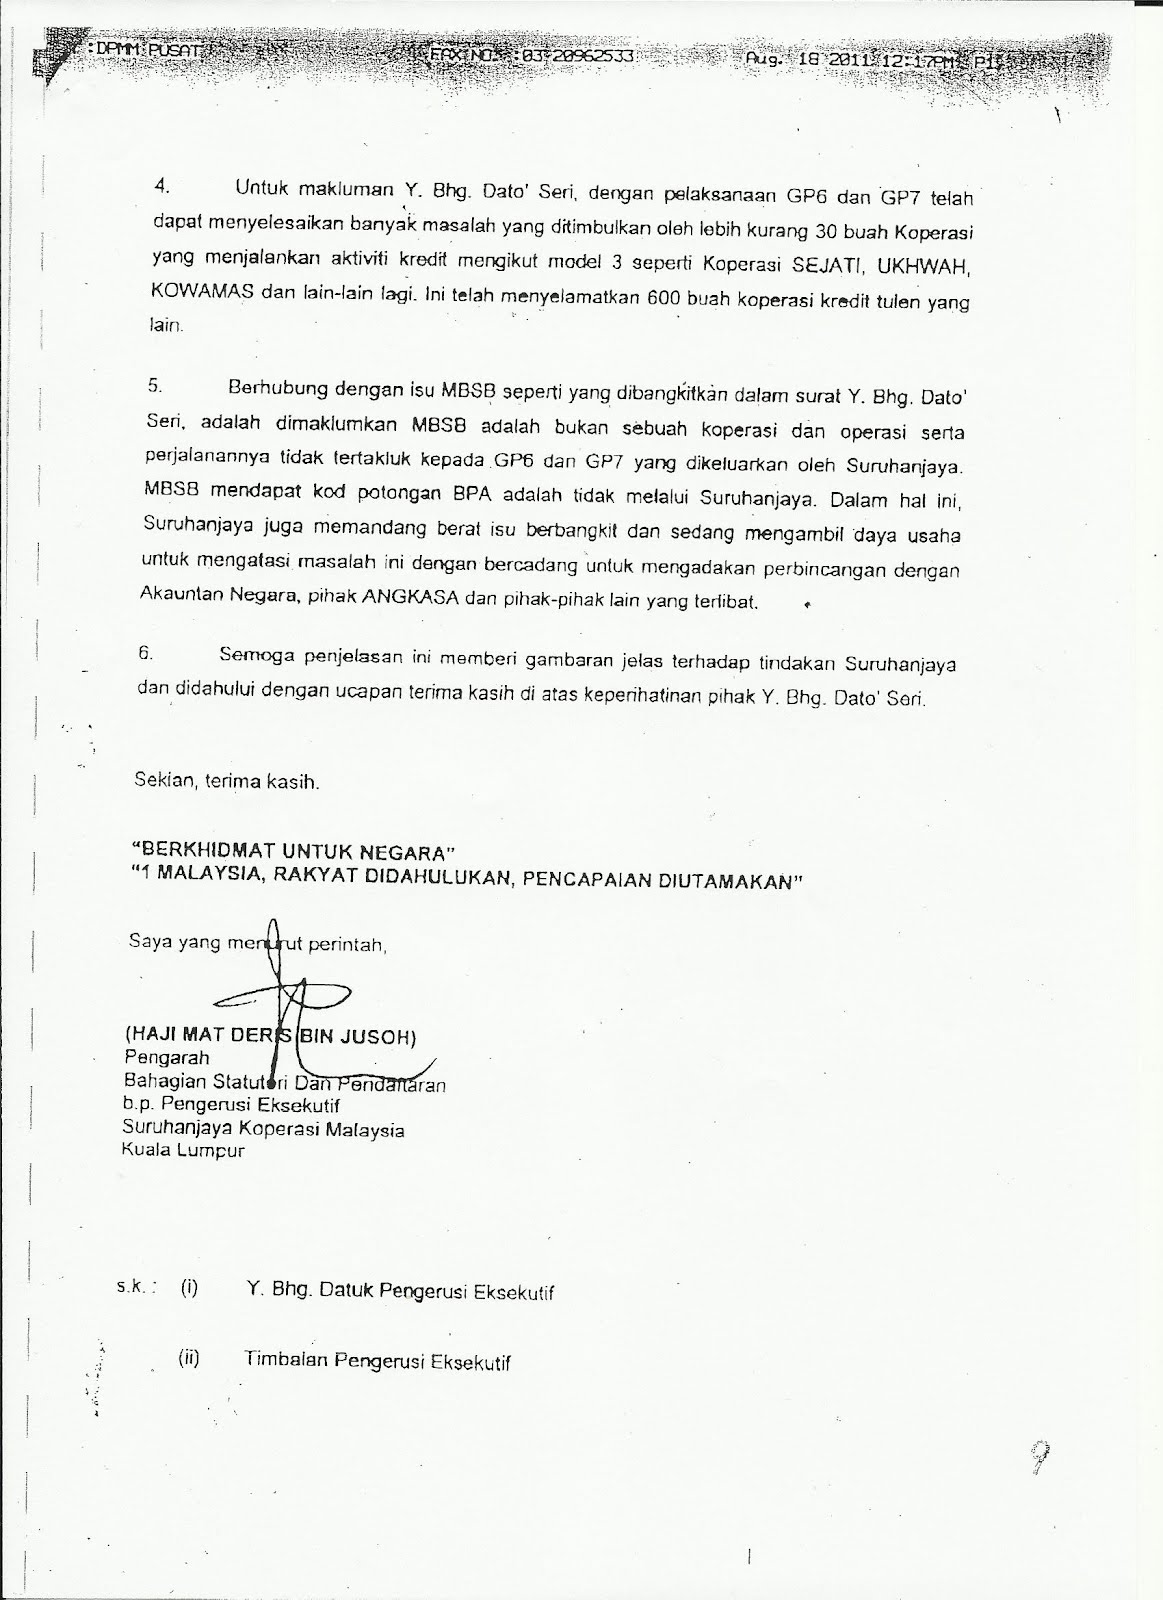 Suruhanjaya Koperasi Malaysia Cawangan Kelantan